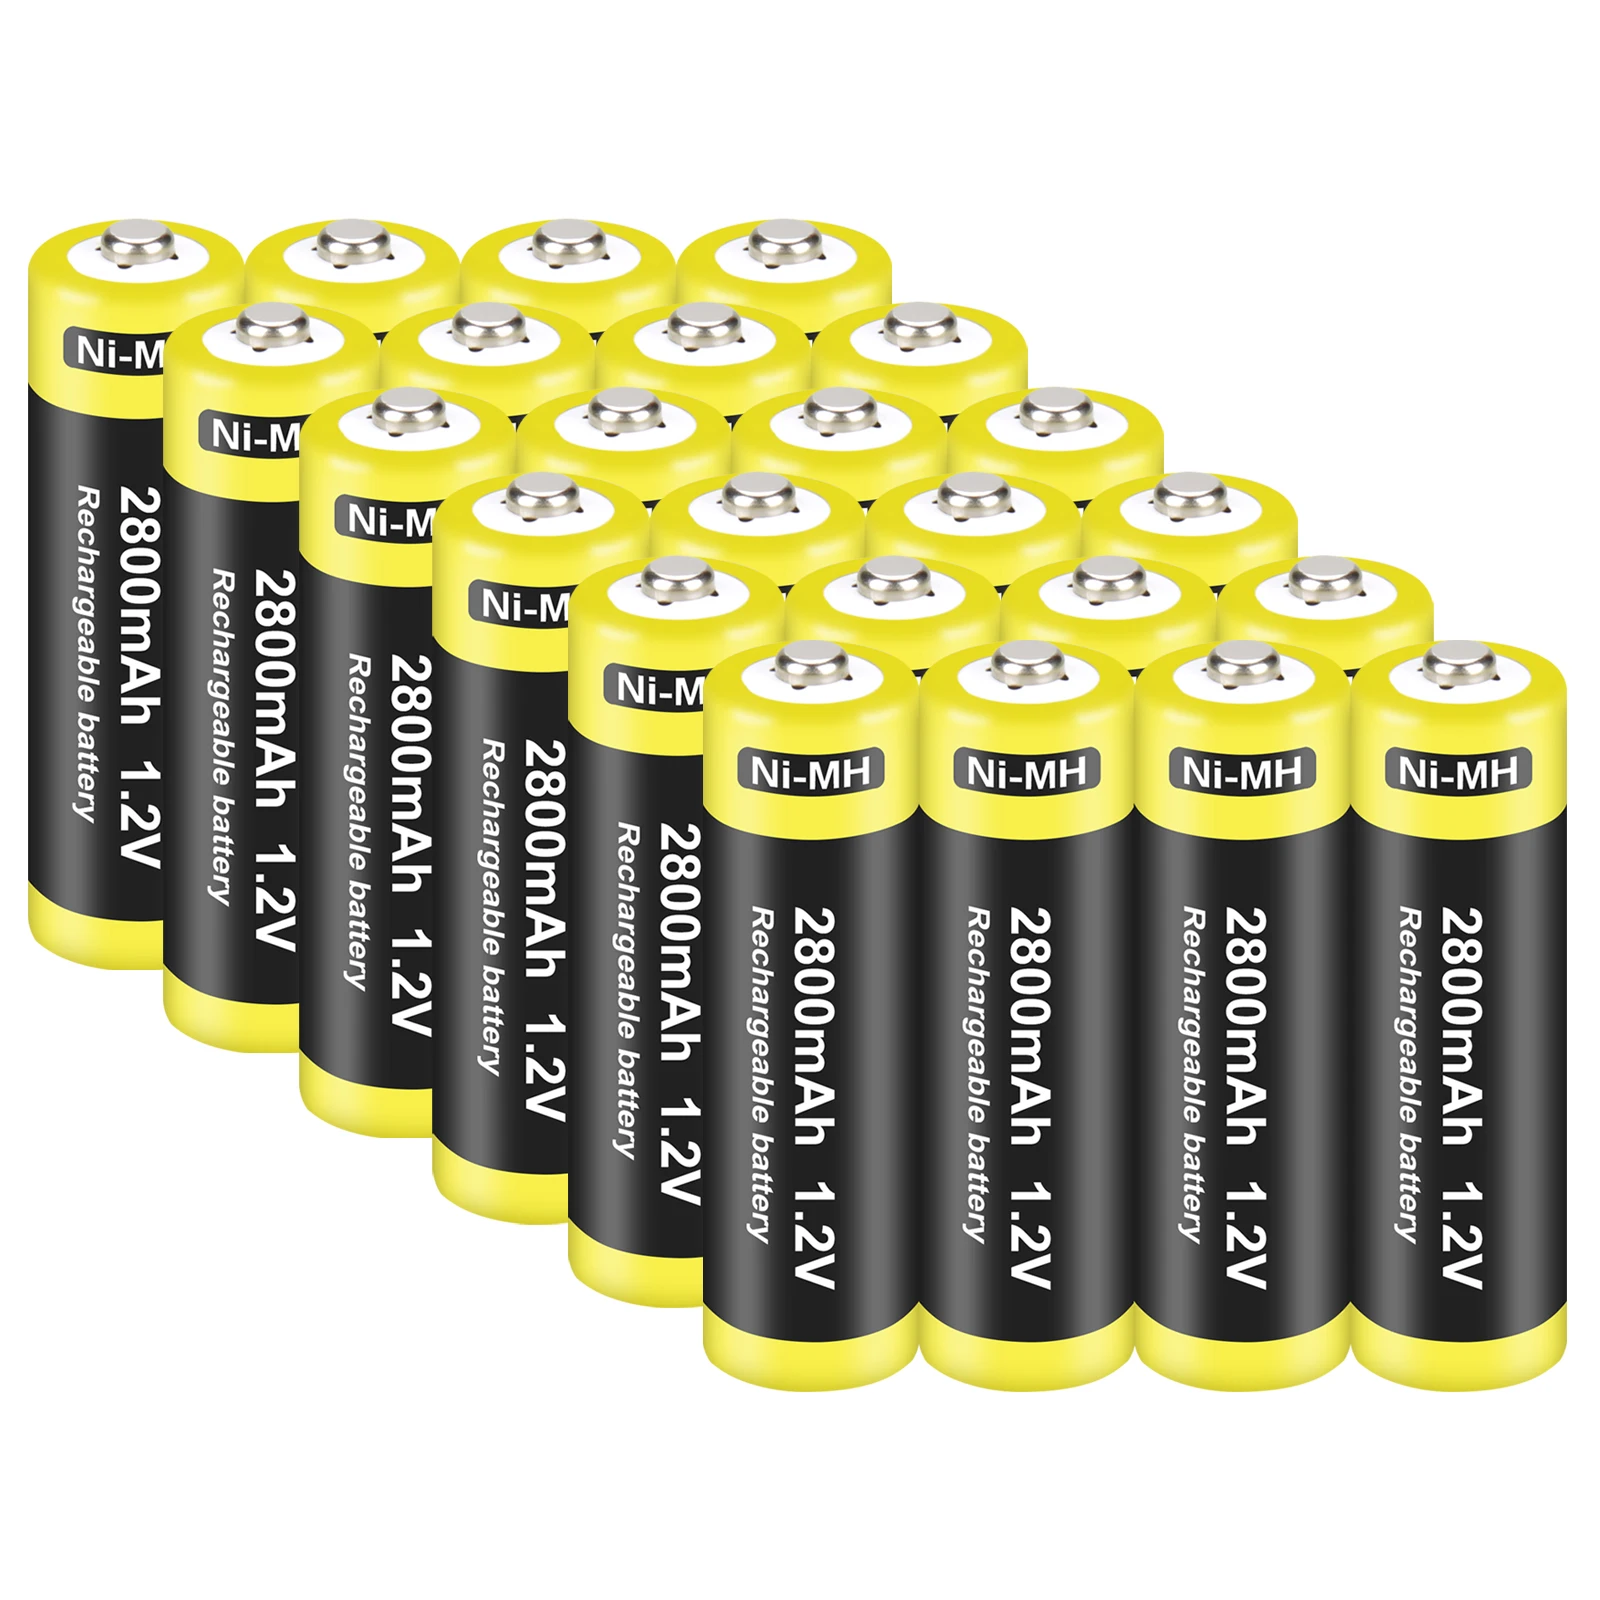 AA Ni-MH Dobíjacie Batérie,2A Batérie 2800mAh s Vysokou Kapacitou pre Hodiny, diaľkové Ovládače, Hračky, Fotoaparáty, Blesky a Ďalšie